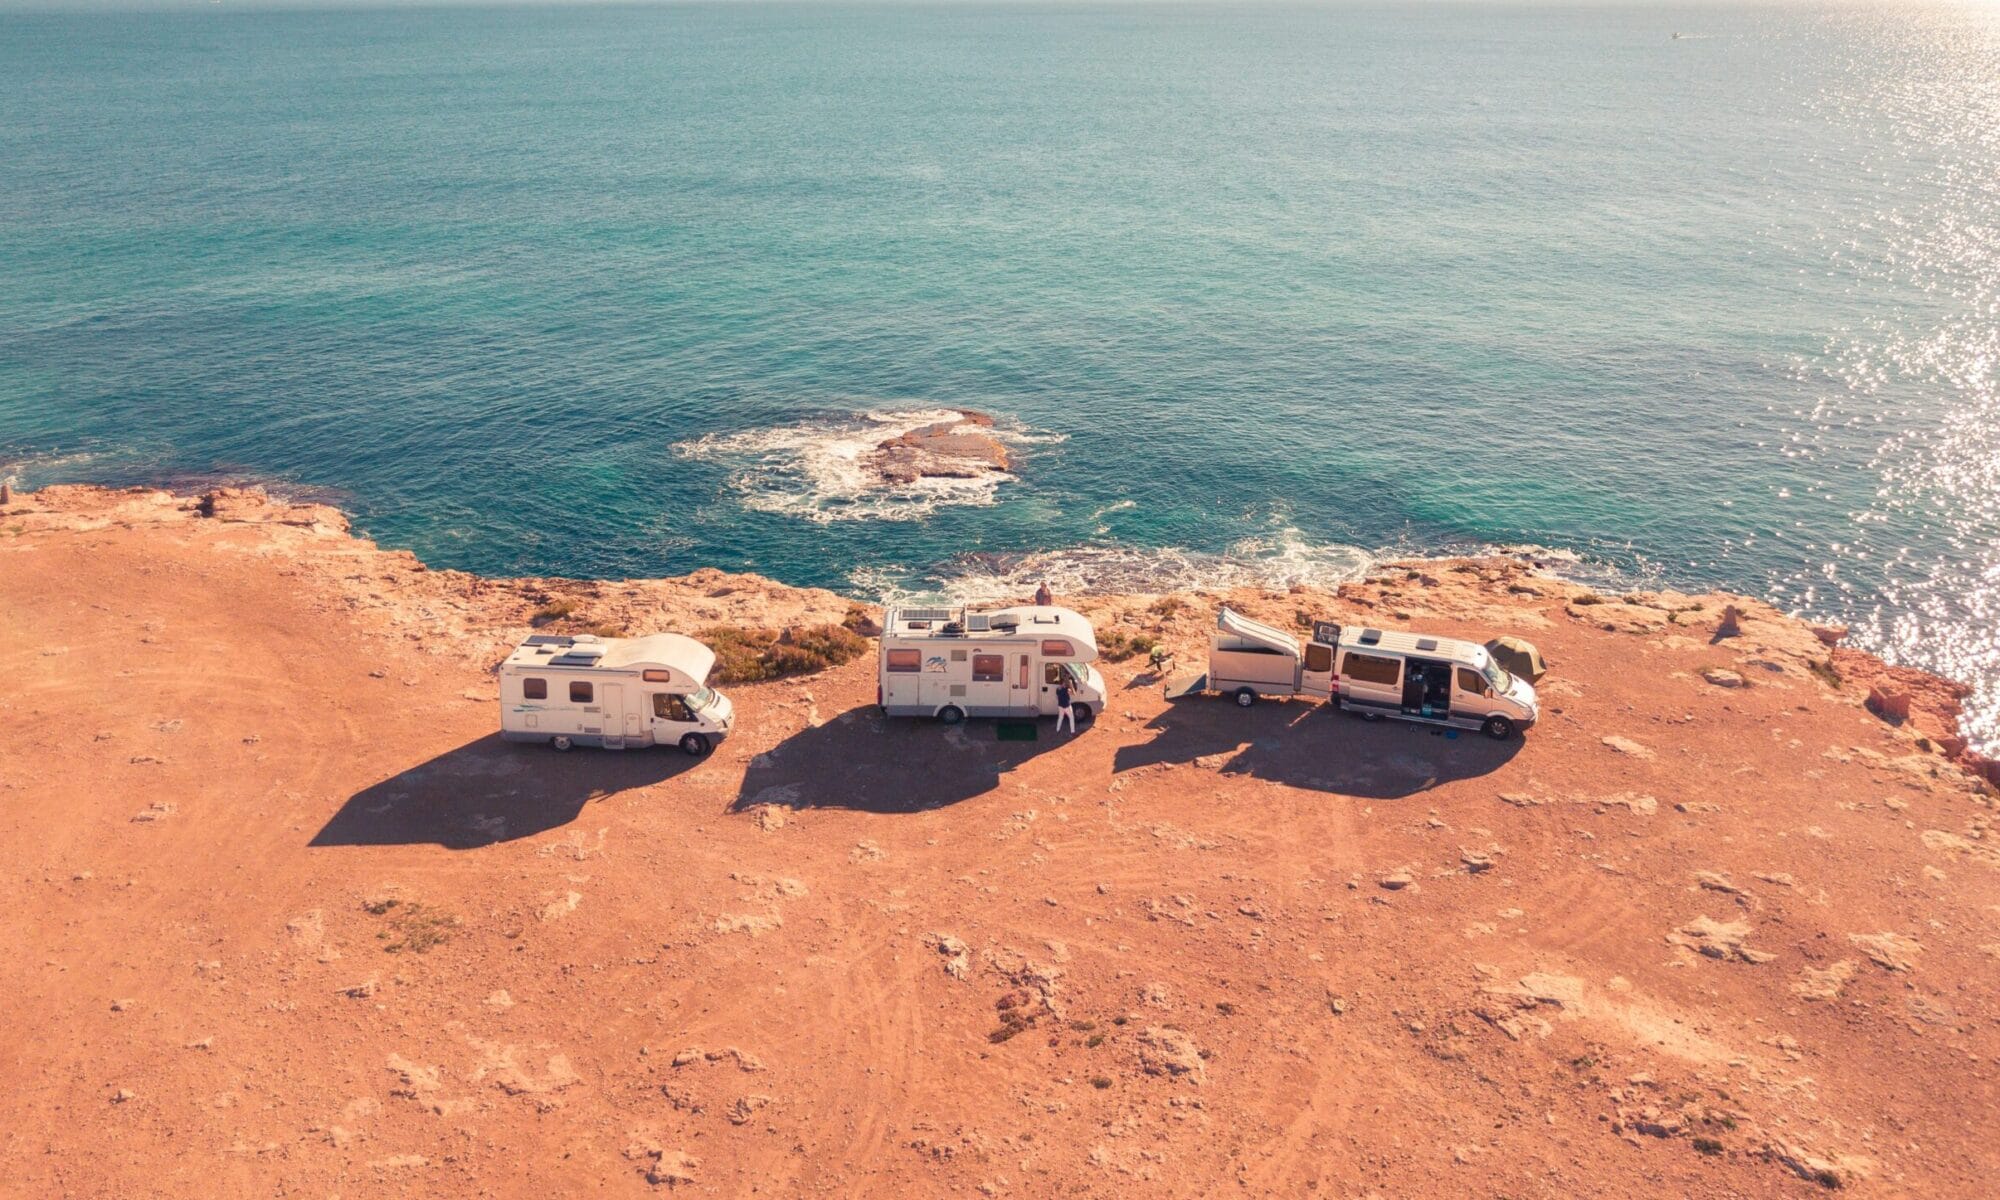 Panorama von 3 Wohnmobilen an einer einsamen Küste